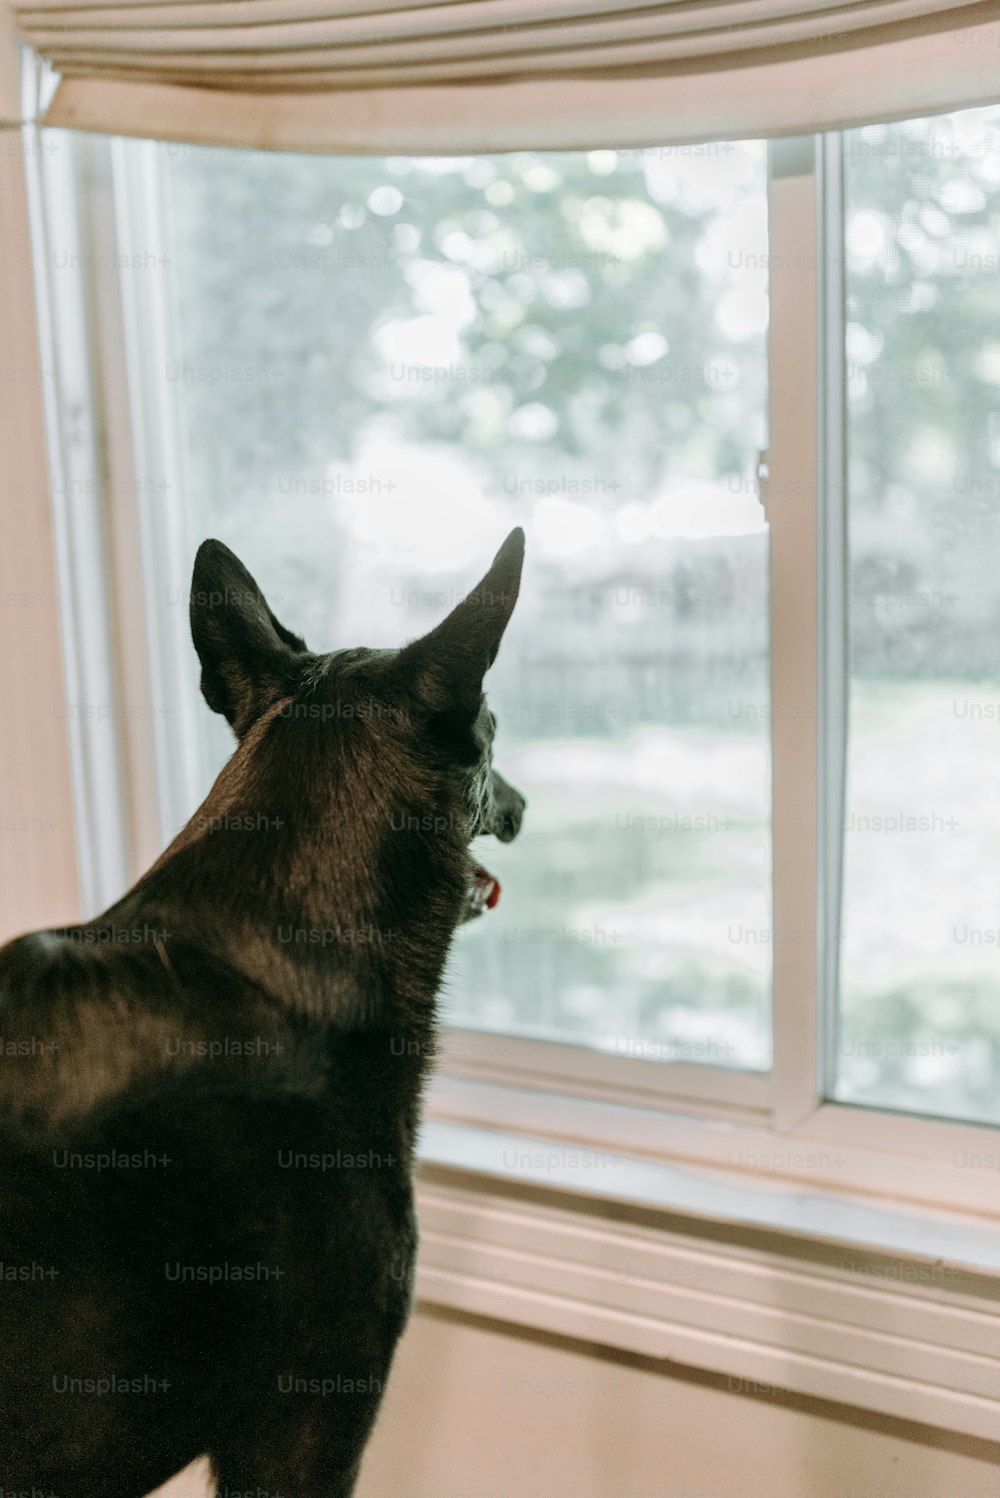 Un perro mirando por una ventana hacia el exterior